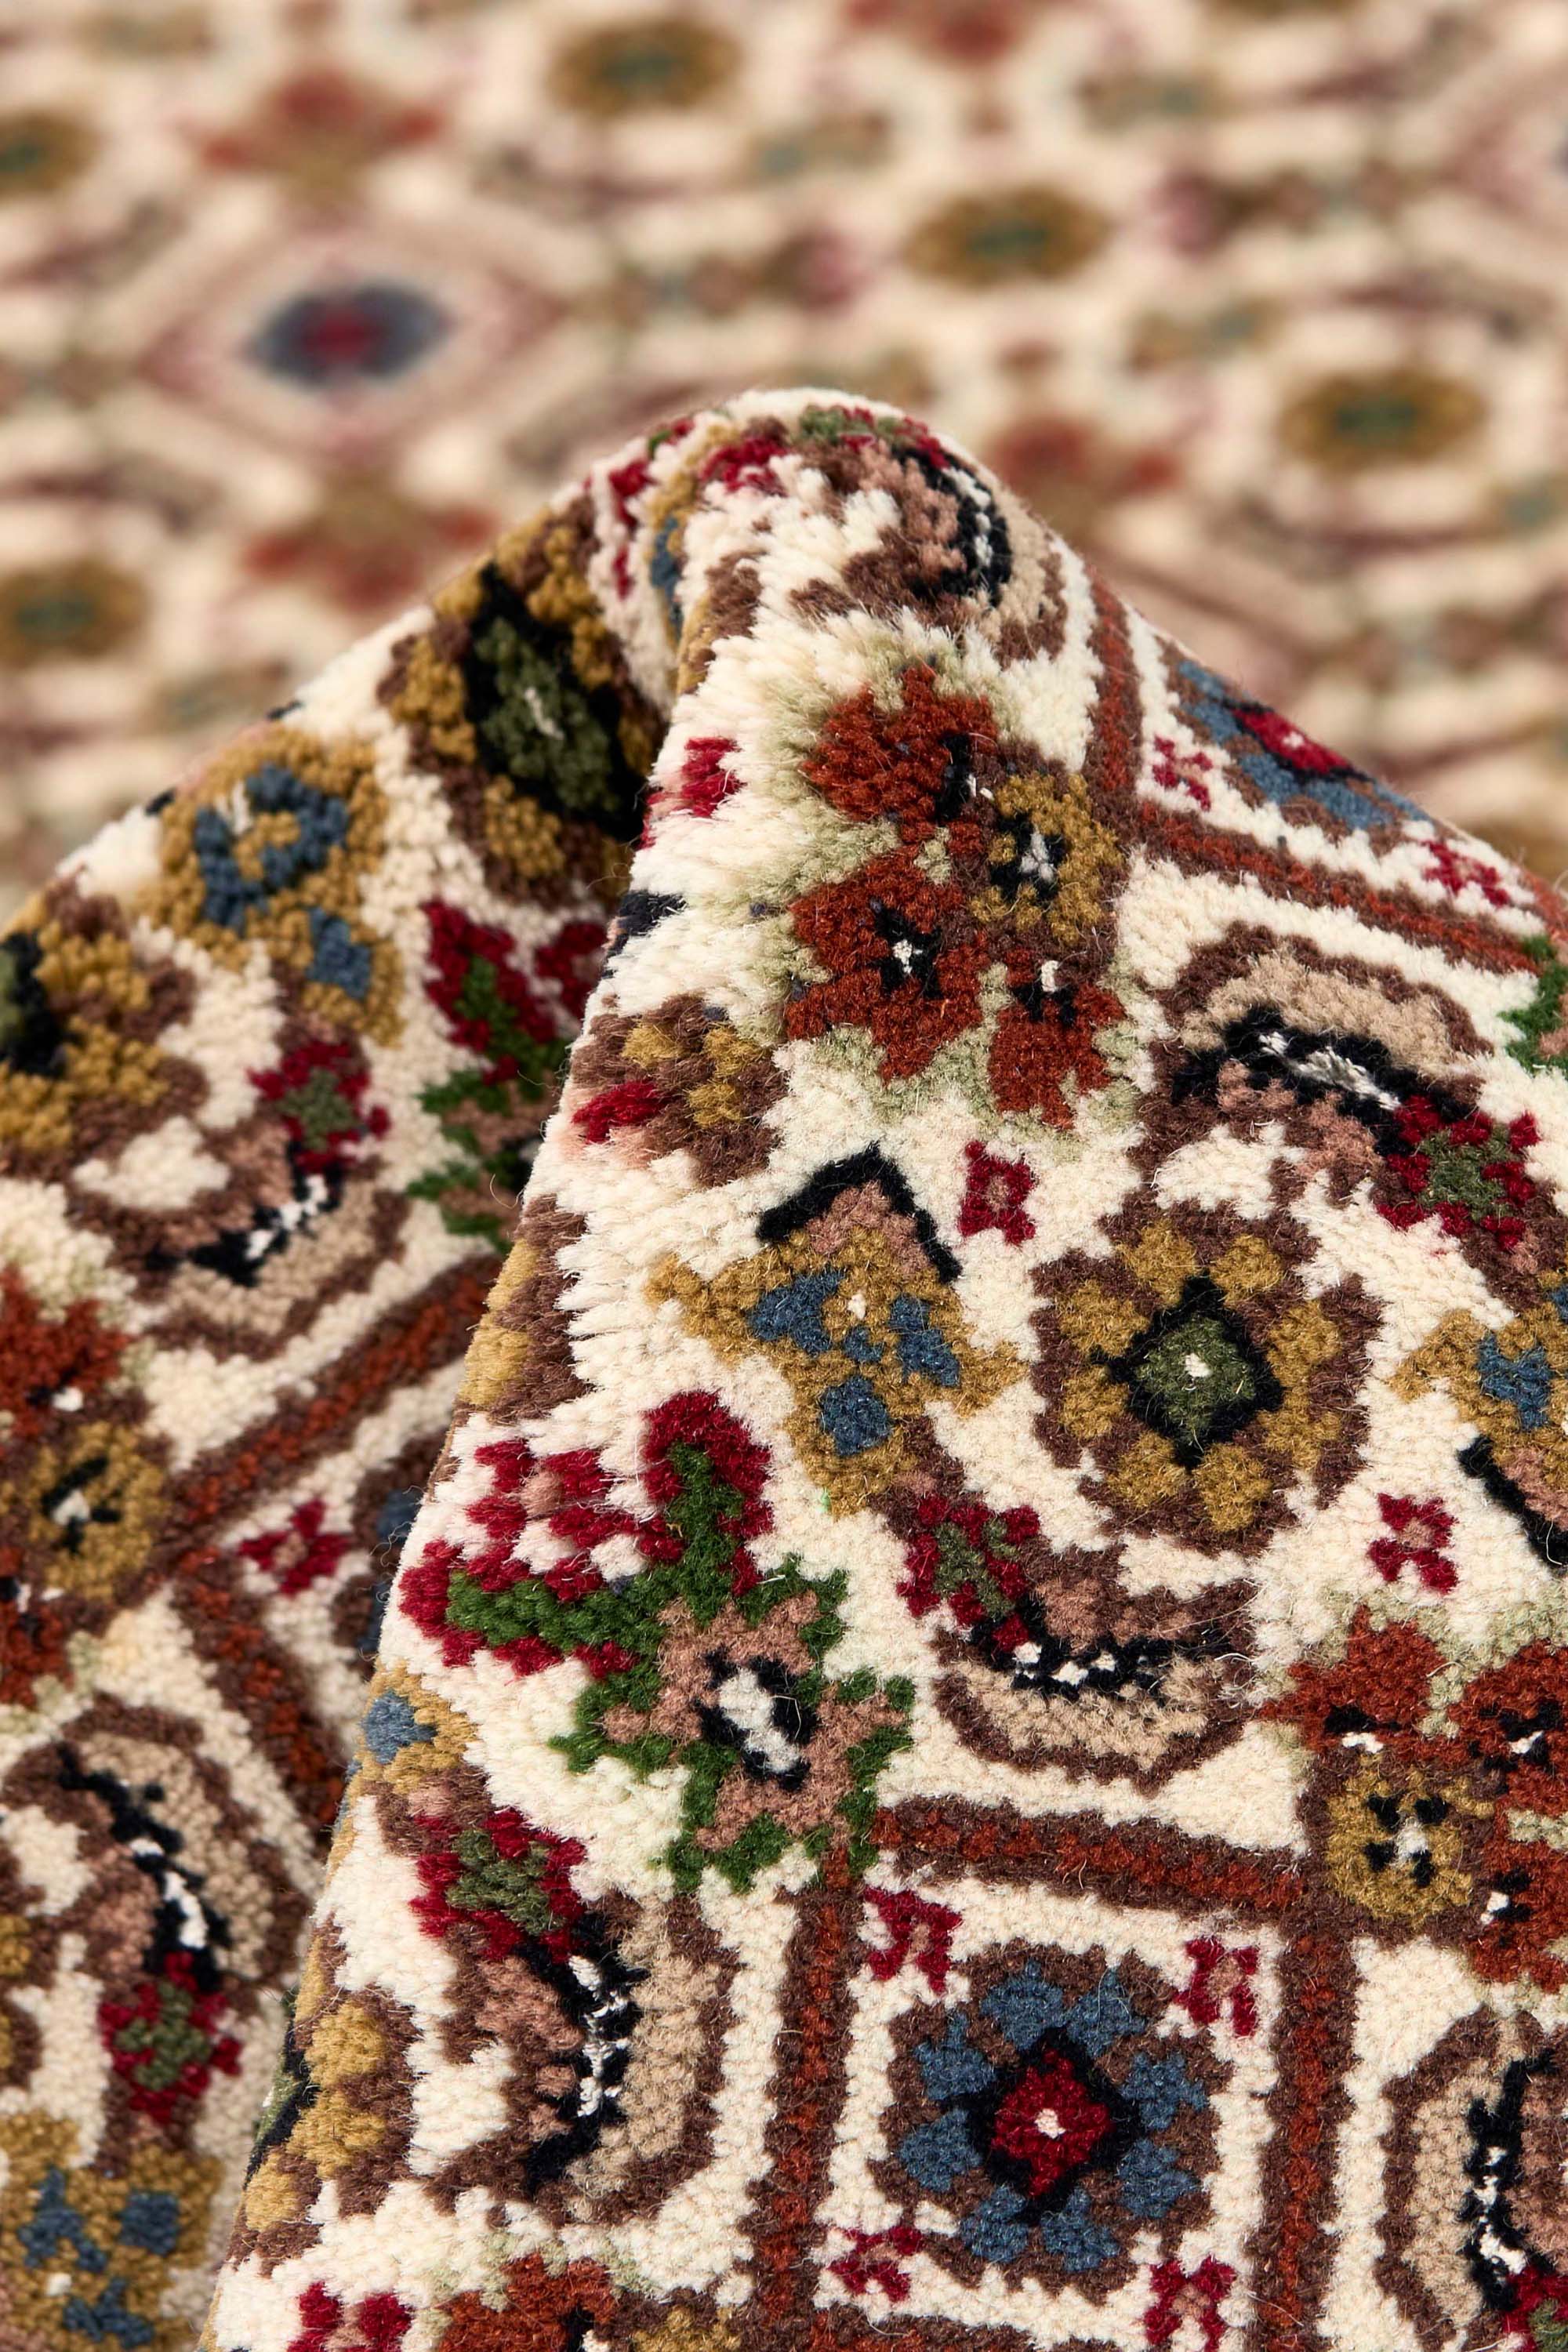 Traditional bordered brown Tabriz rug